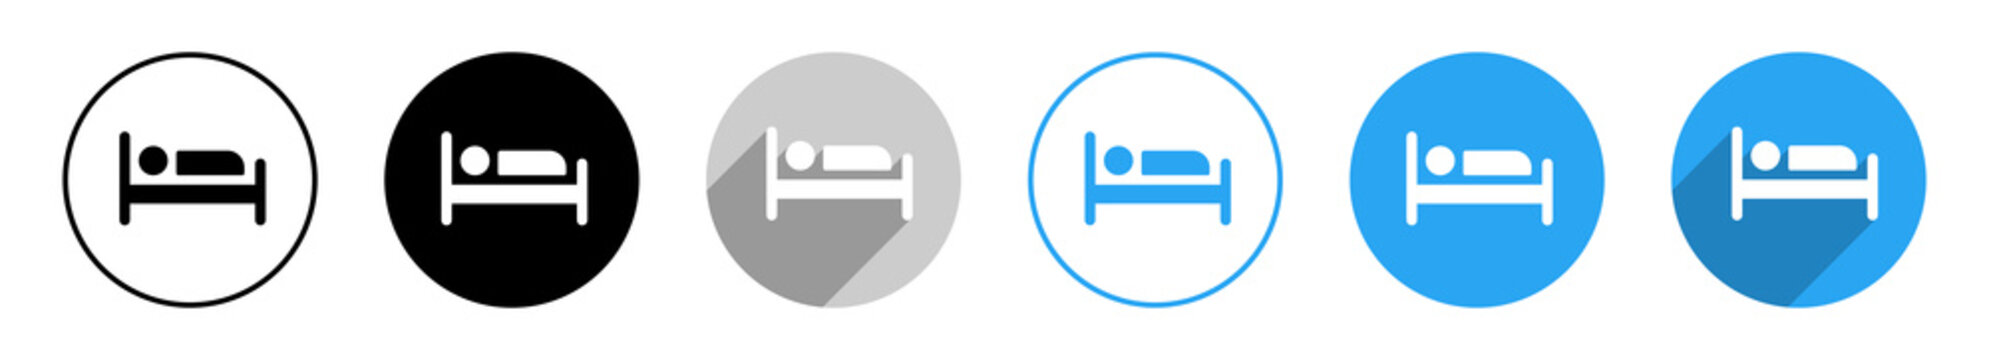 Übernachtung Schlafplatz Vektor Icons